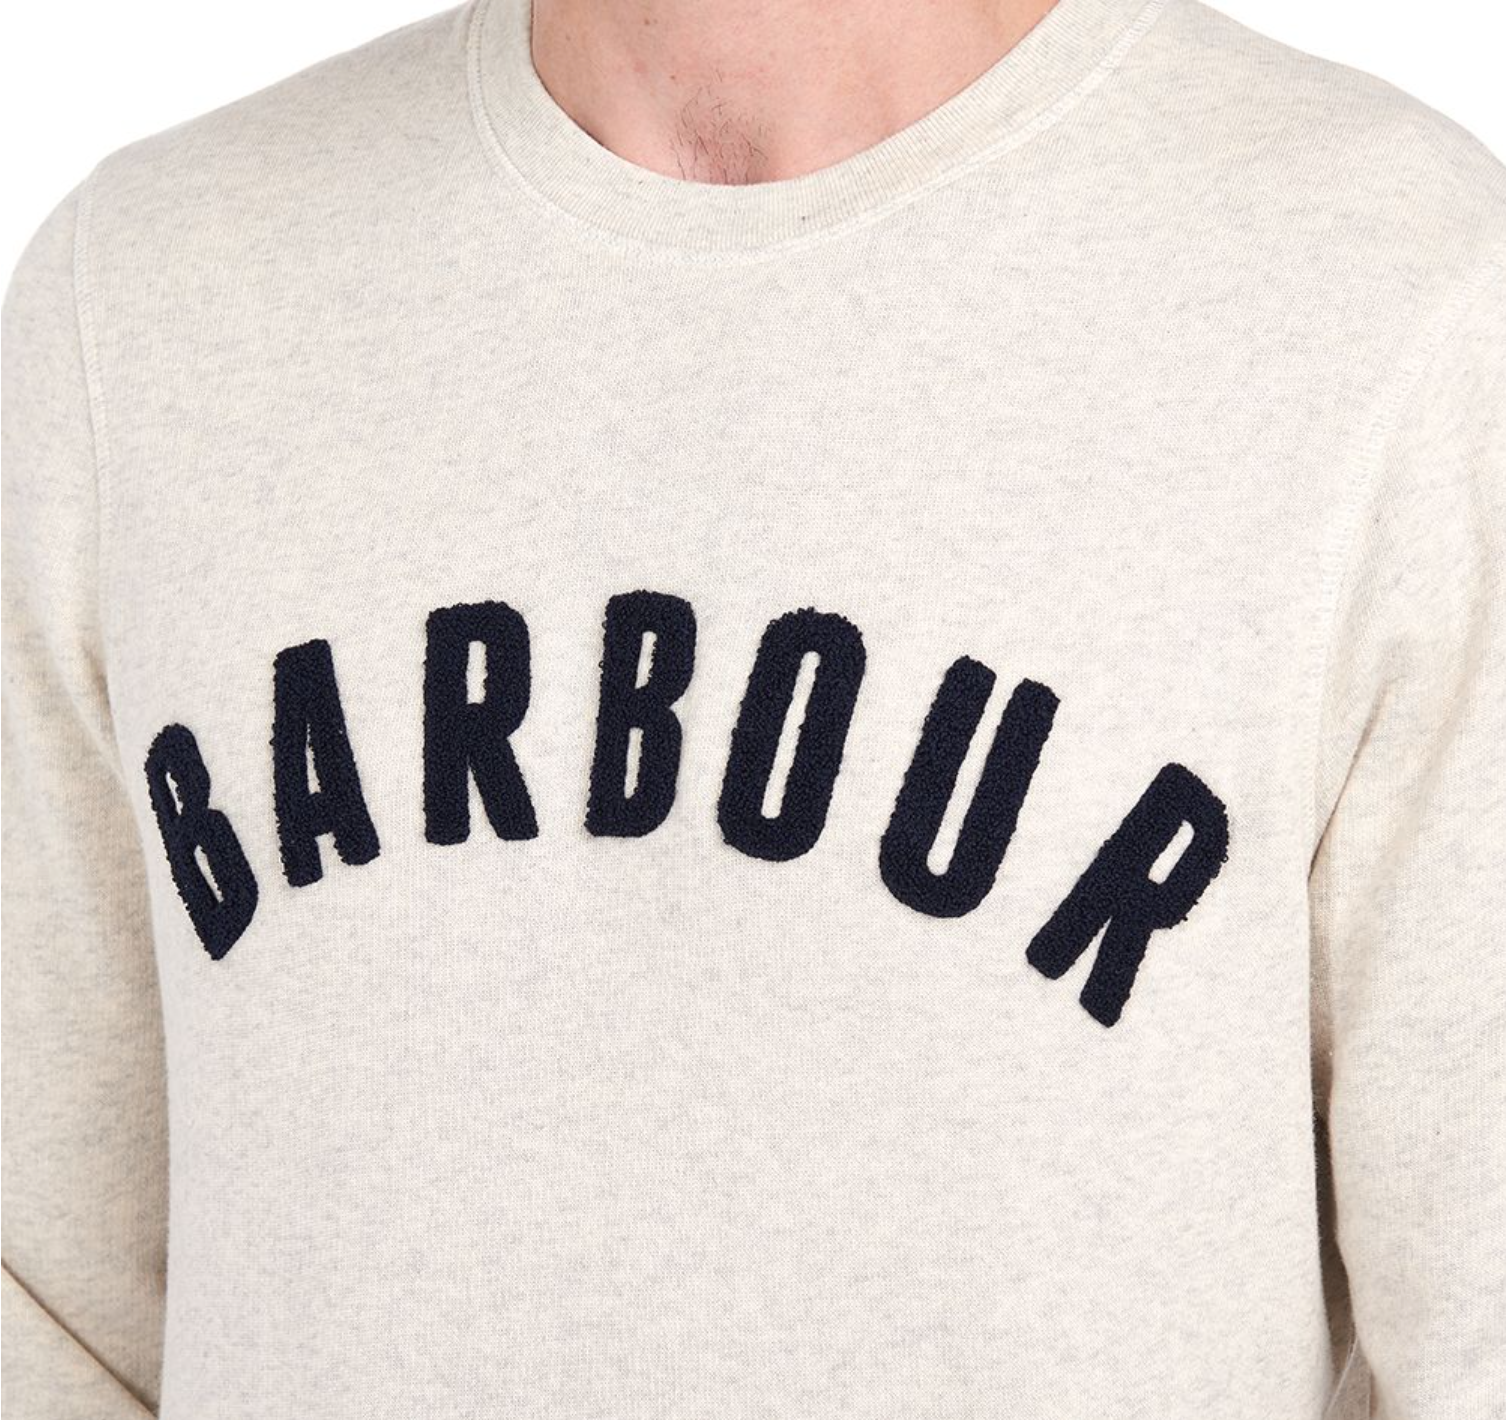 Barbour Men's Essential Prep Logo Crew